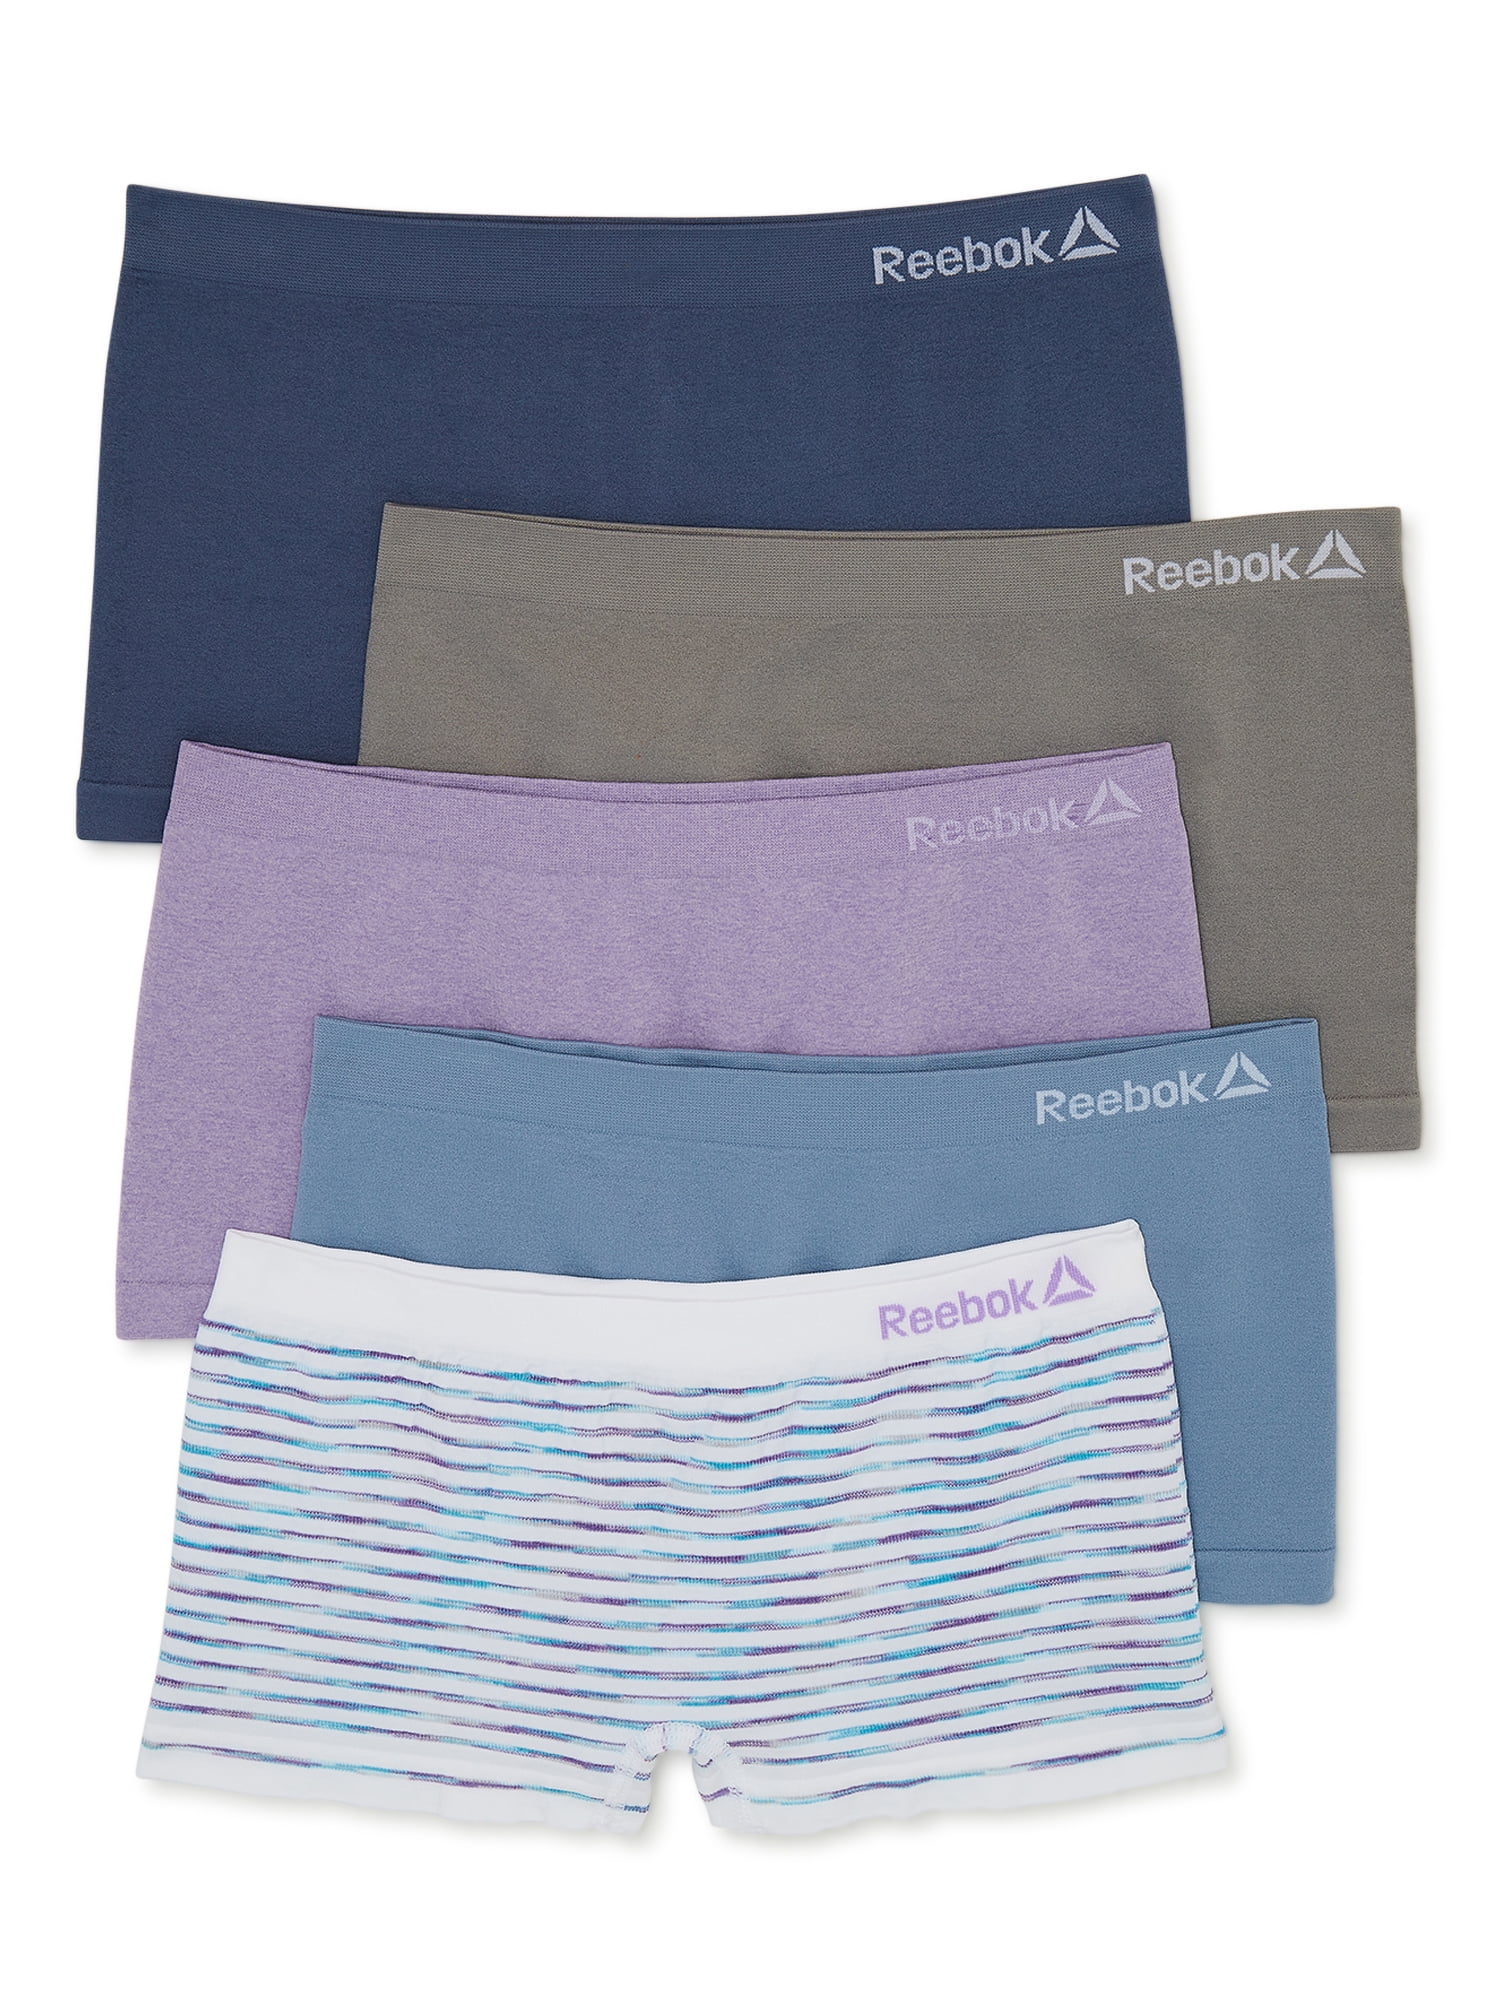 Reebok Girls' Underwear - Seamless Hipster Brief Panties (8 Pack)